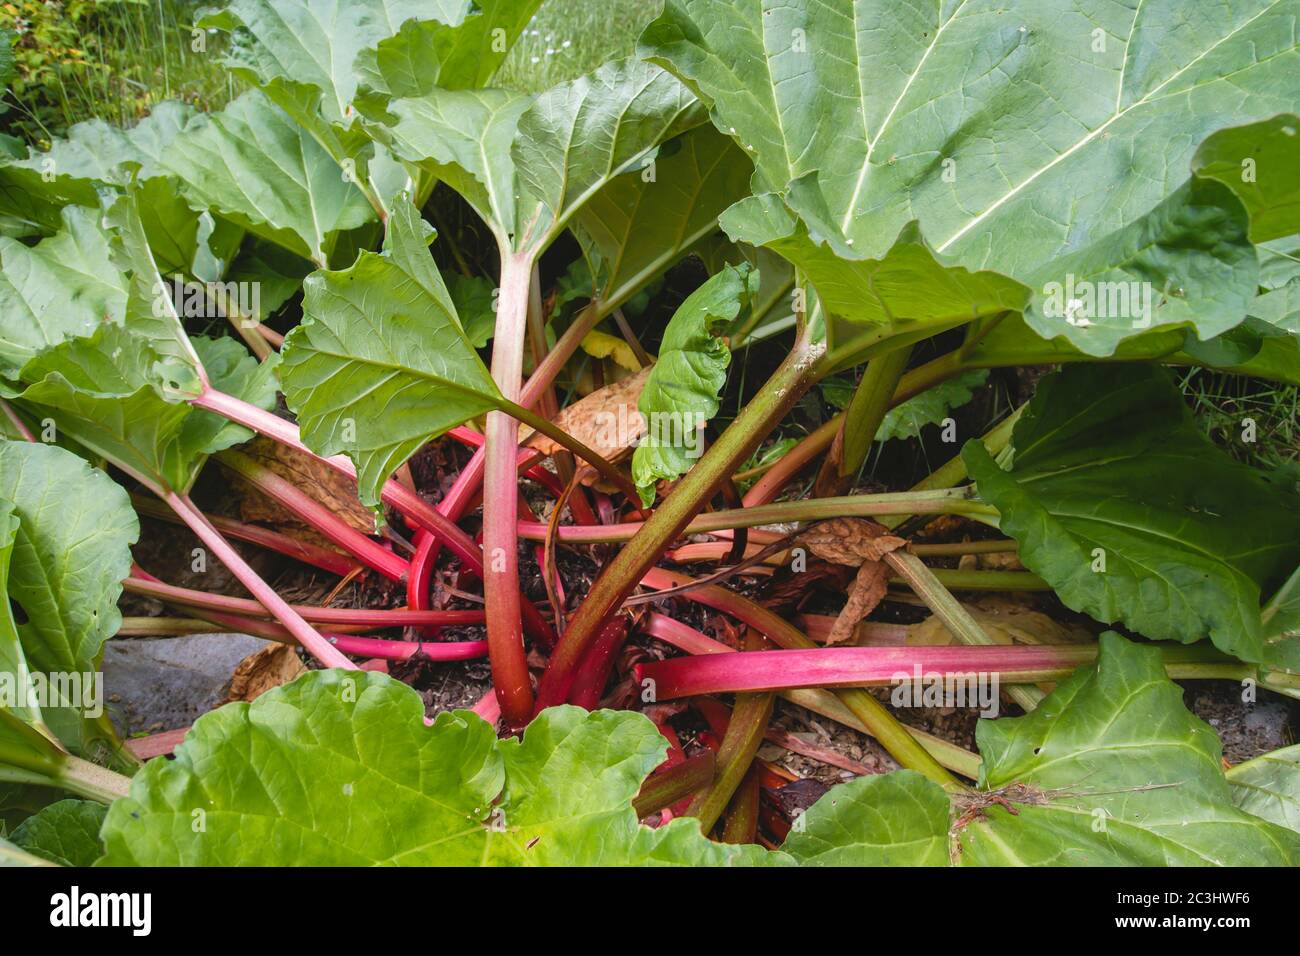 Rhabarber Pflanzen mit grünen Blättern und roten Stielen Stockfoto